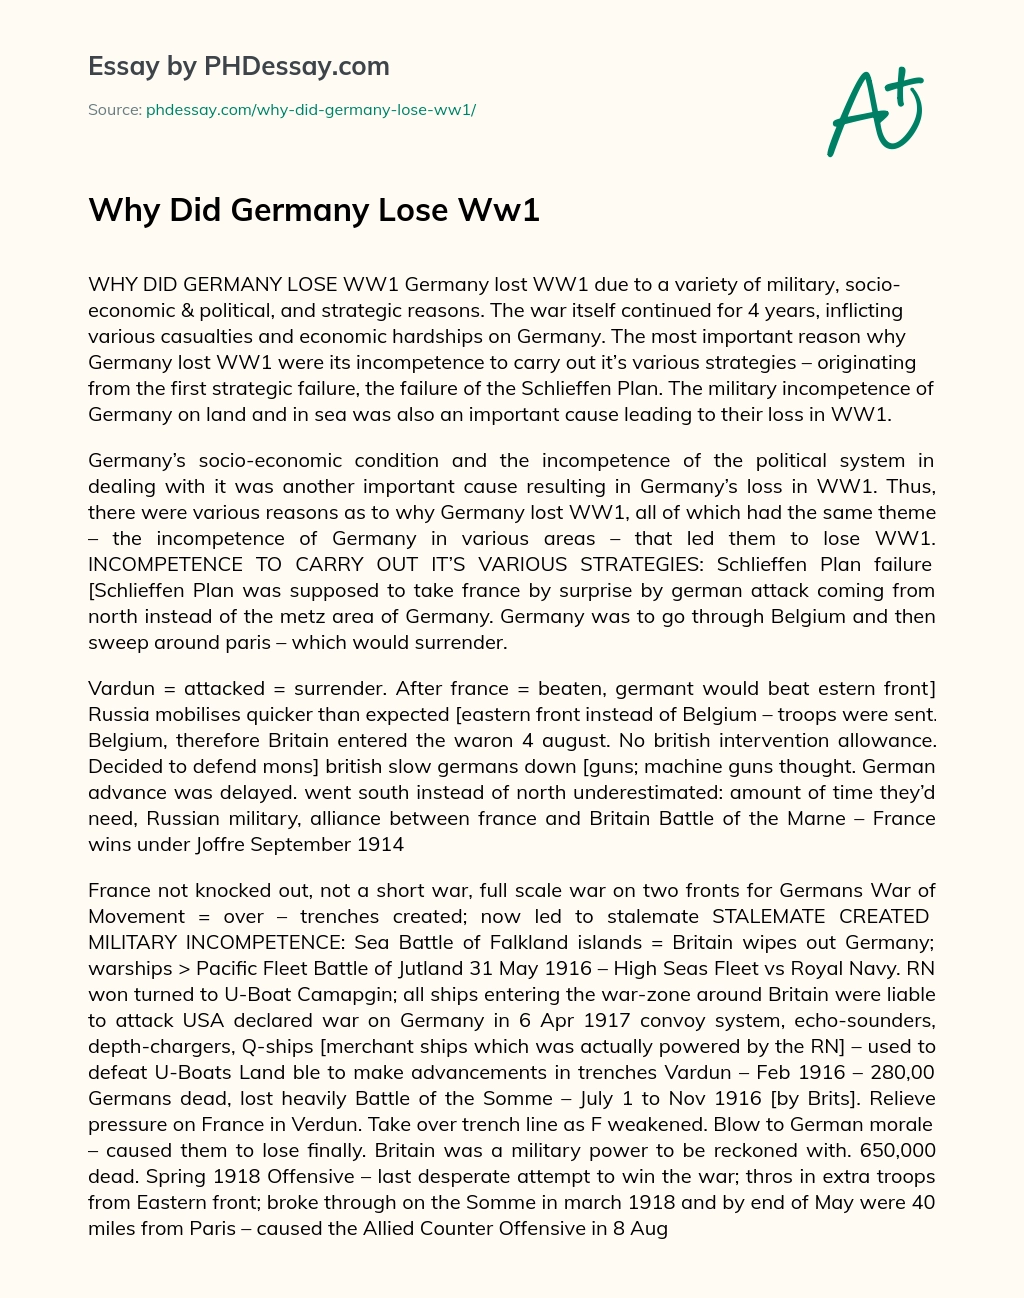 Why Did Germany Lose Ww1 essay